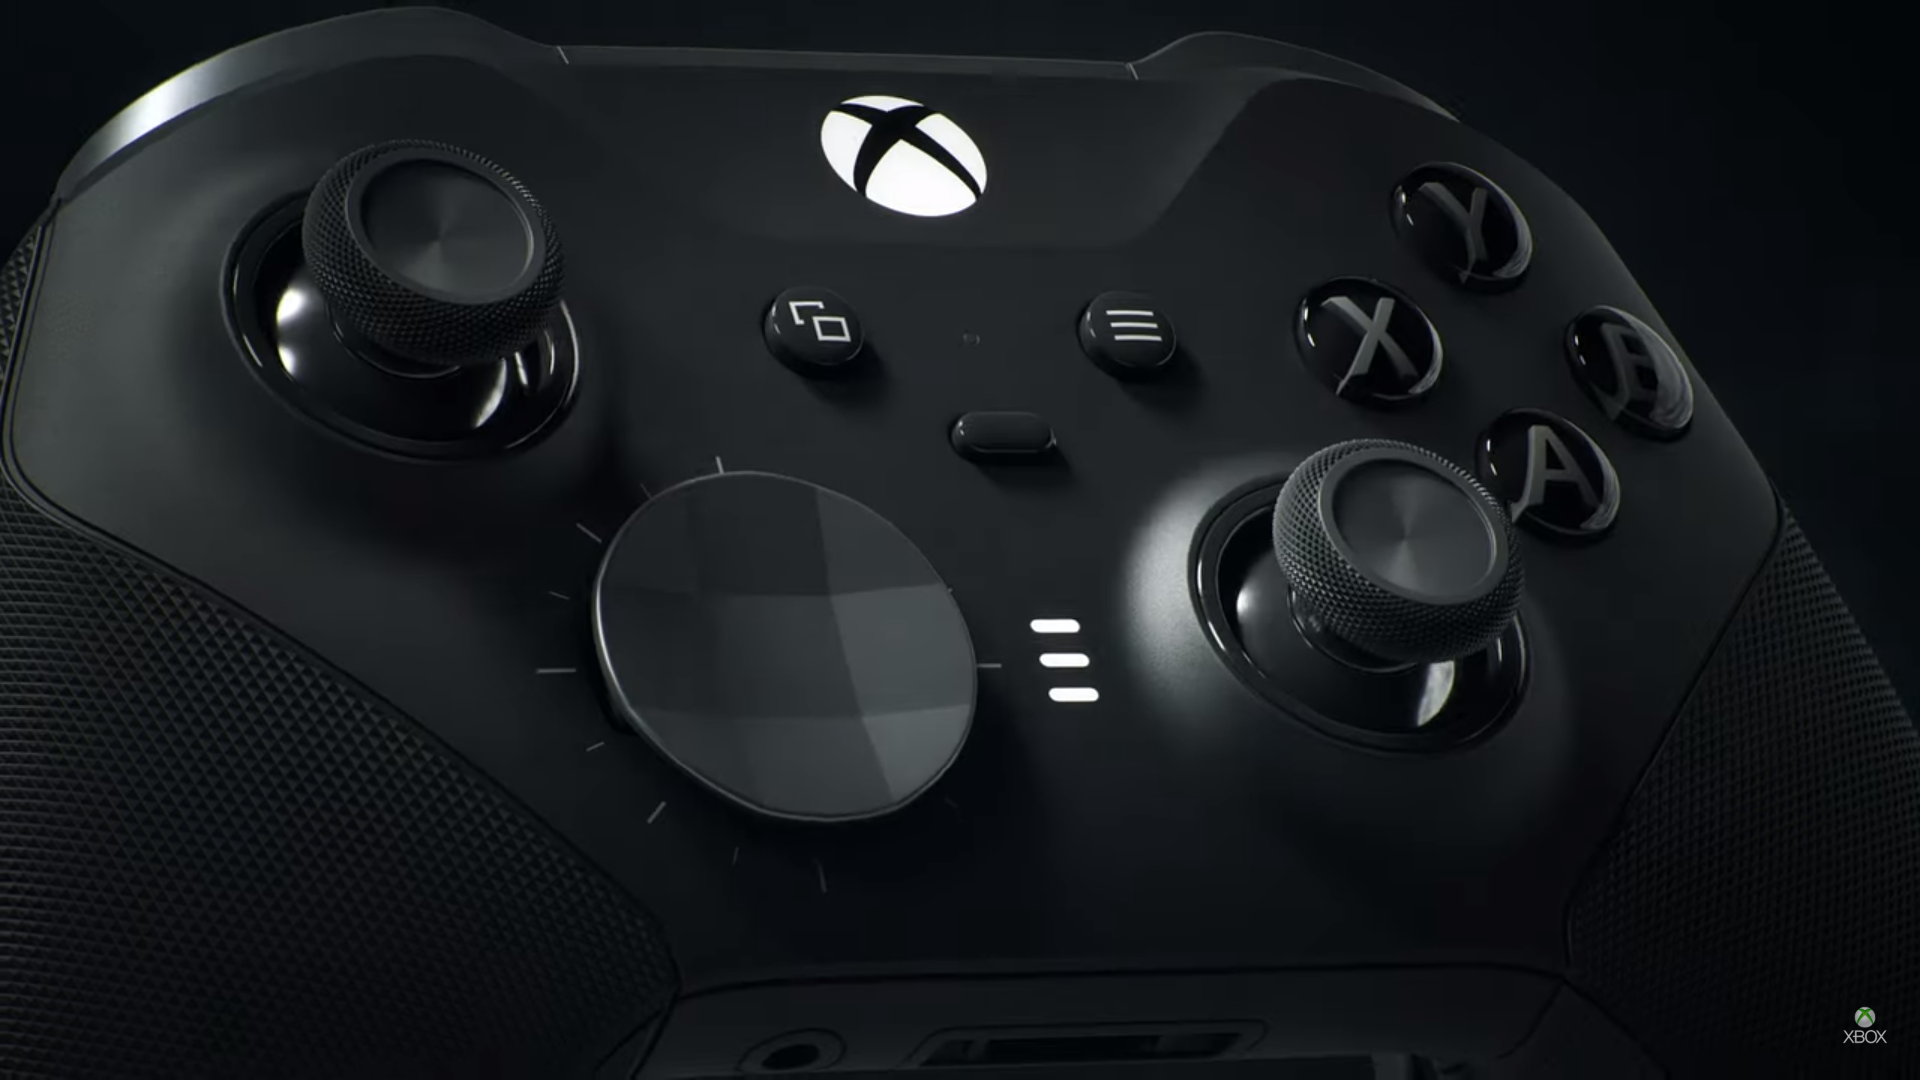 Tay cầm Xbox series X với thiết kế bắt mắt và tiện lợi giúp bạn thoải mái trải nghiệm các trò chơi yêu thích. Chất liệu cao cấp, độ bền cao cùng với các chức năng thông minh sẽ giúp bạn thấy hoàn toàn khác biệt khi chơi game.